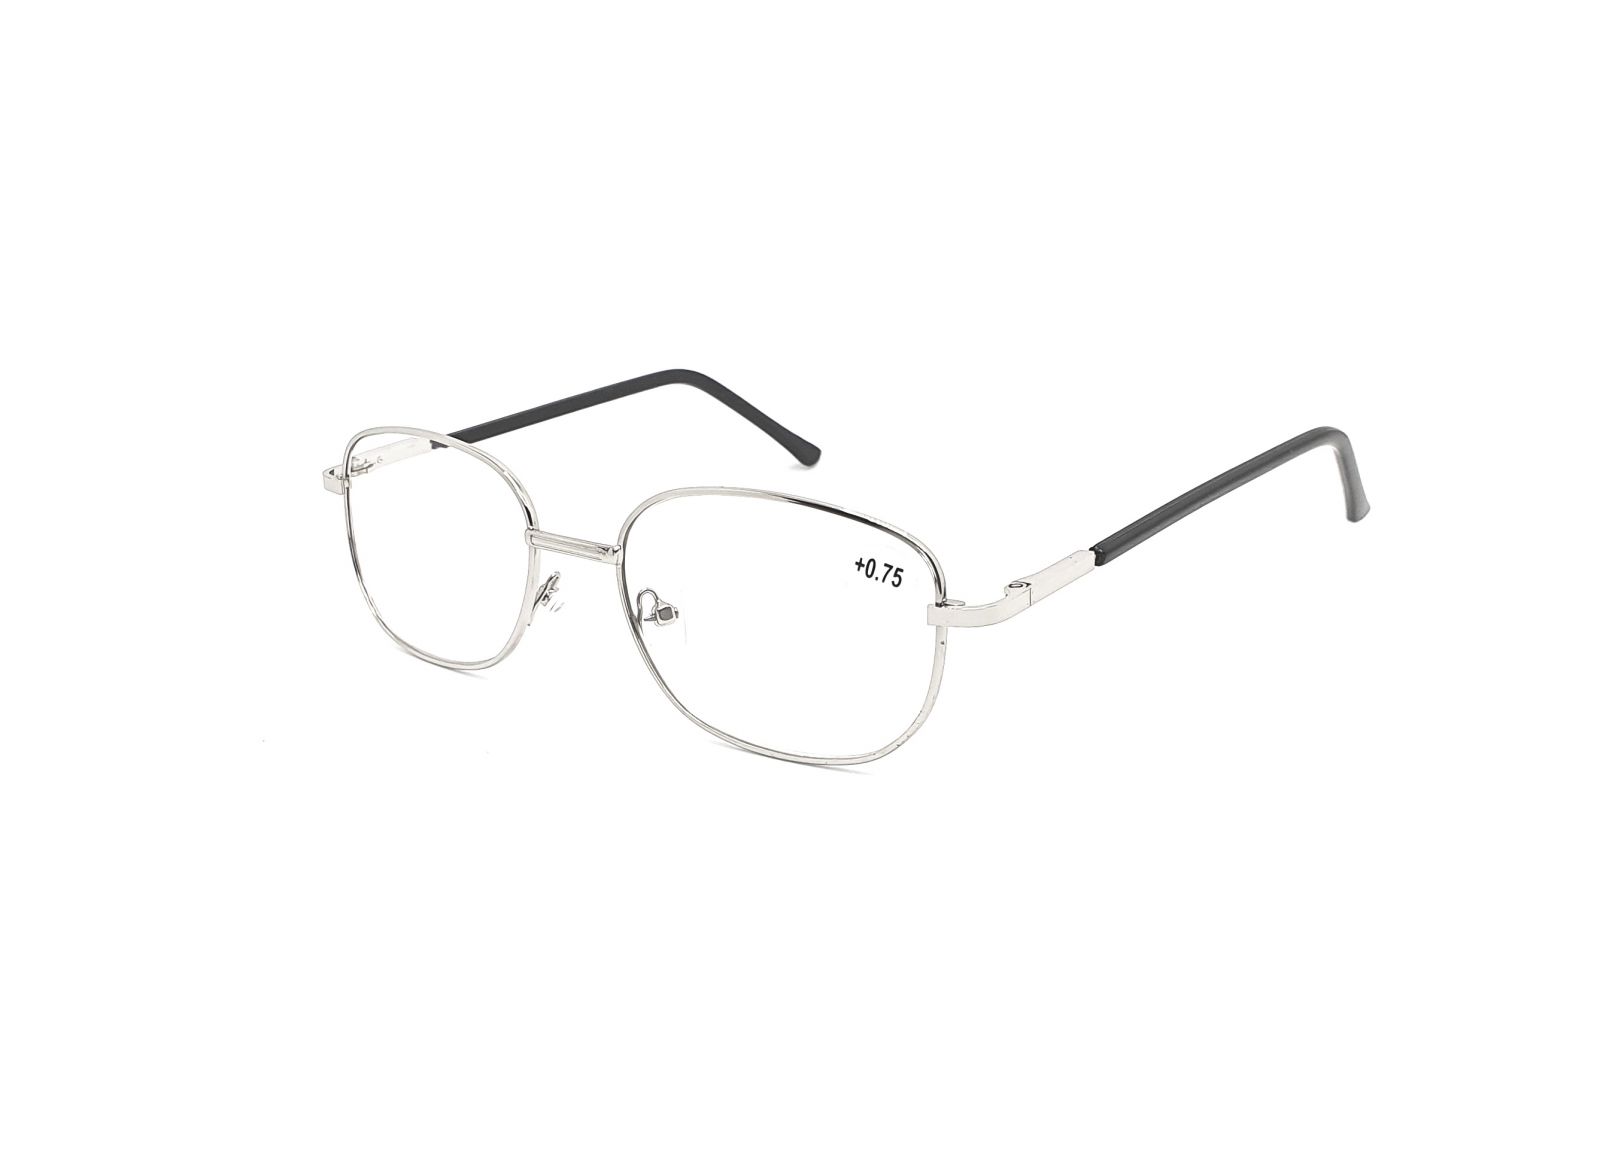 Dioptrické brýle 804/ +0,75 s flexem silver